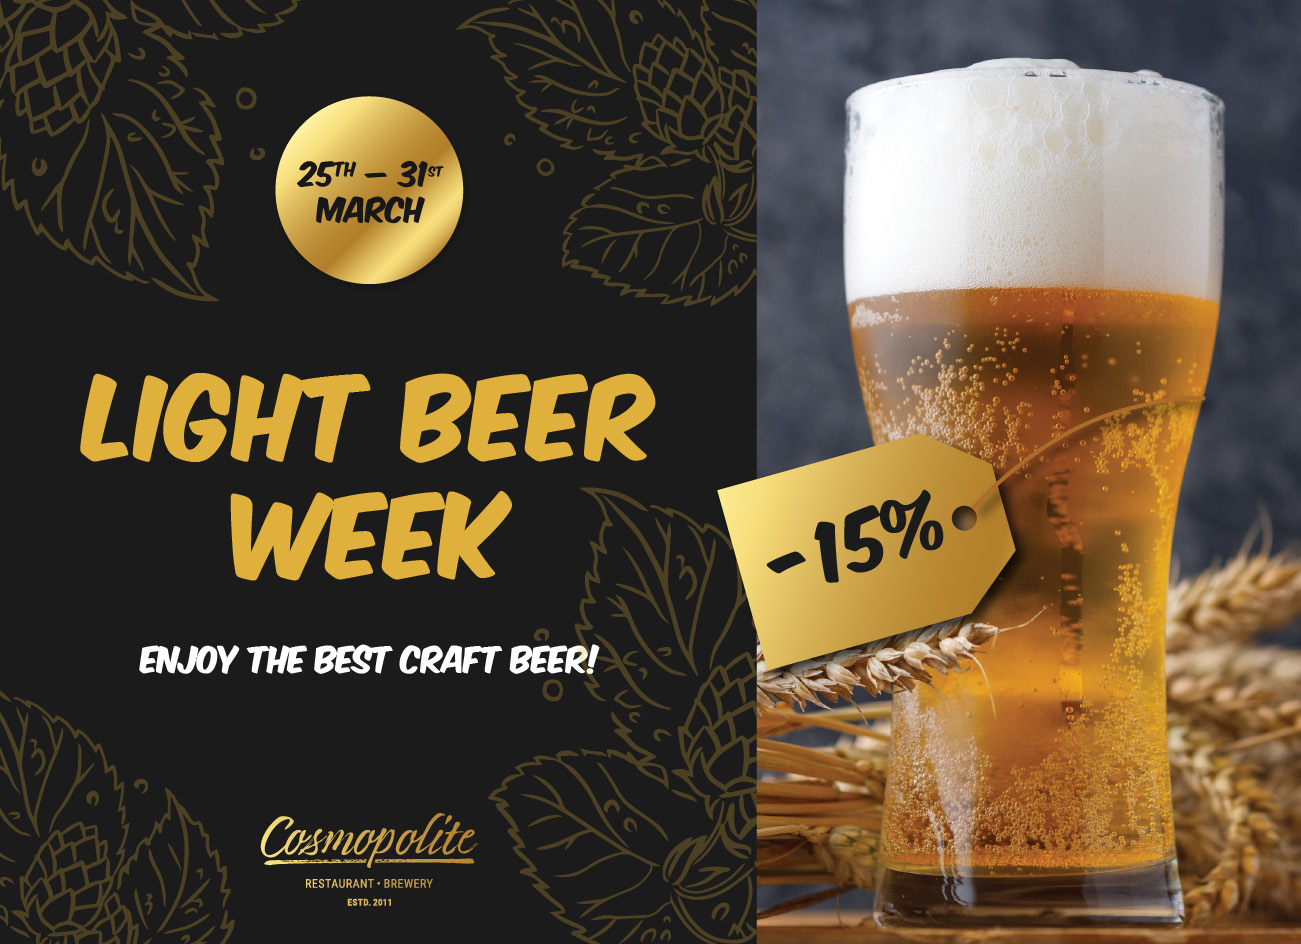 Light beer week